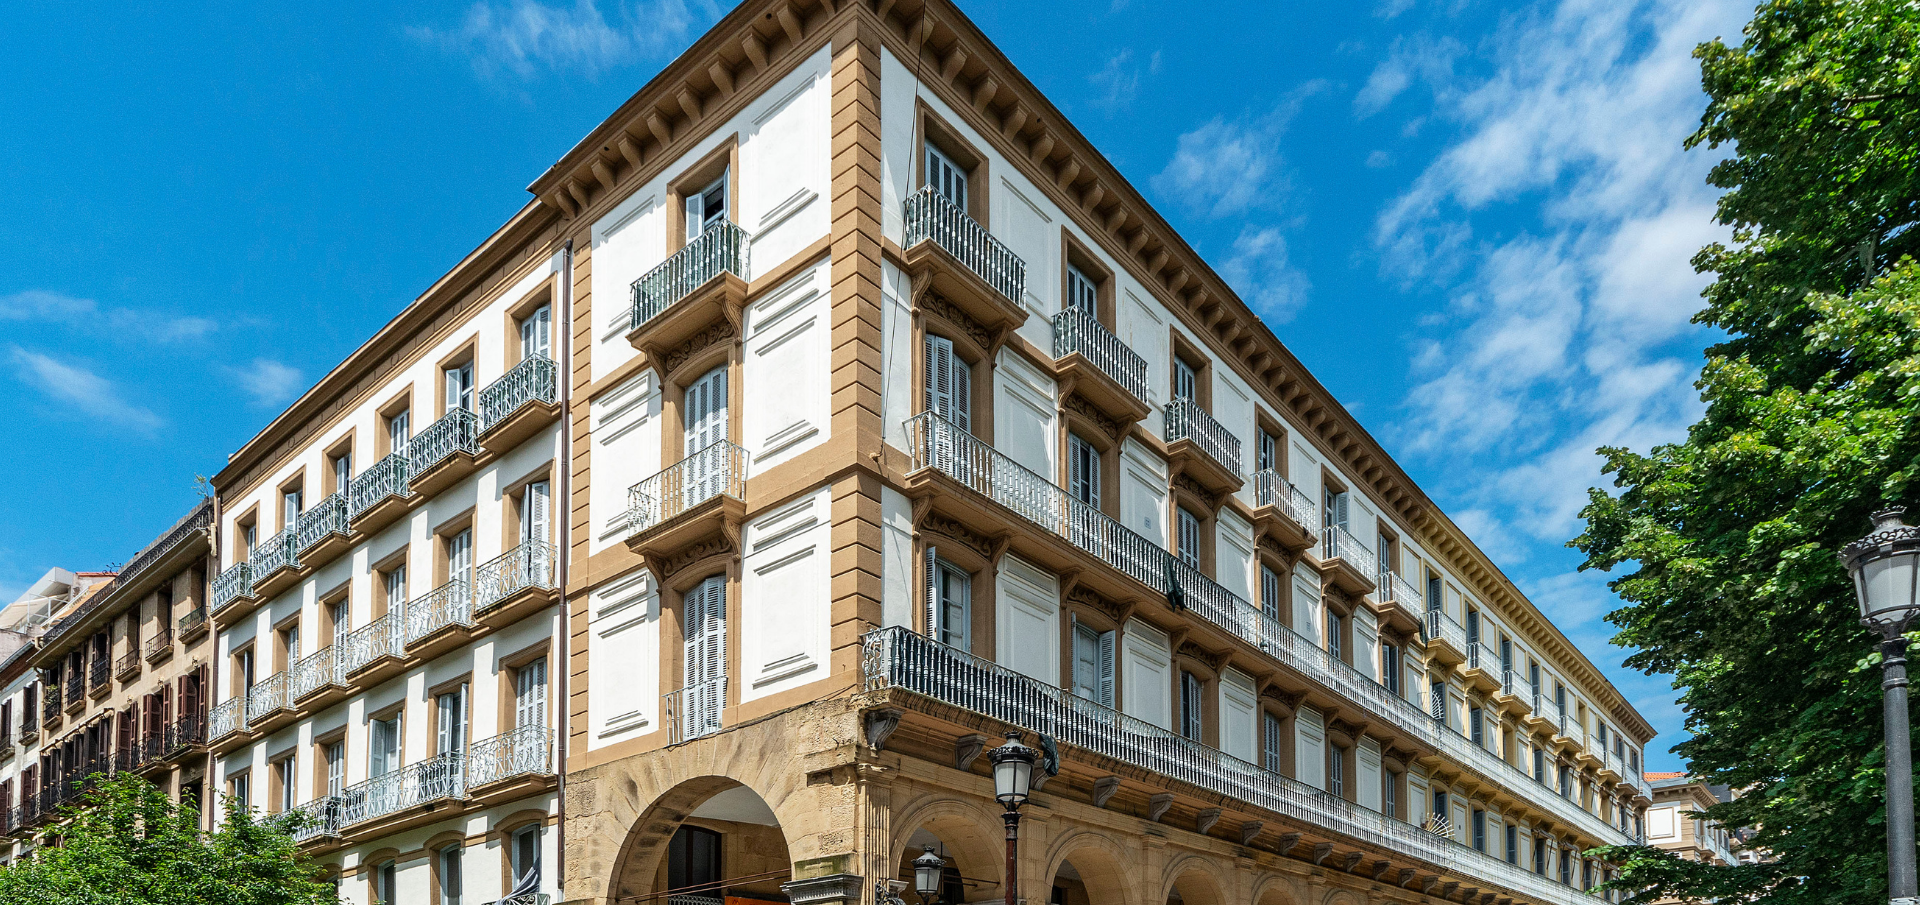 Culmia lanza 15 viviendas en el centro histórico de San Sebastián